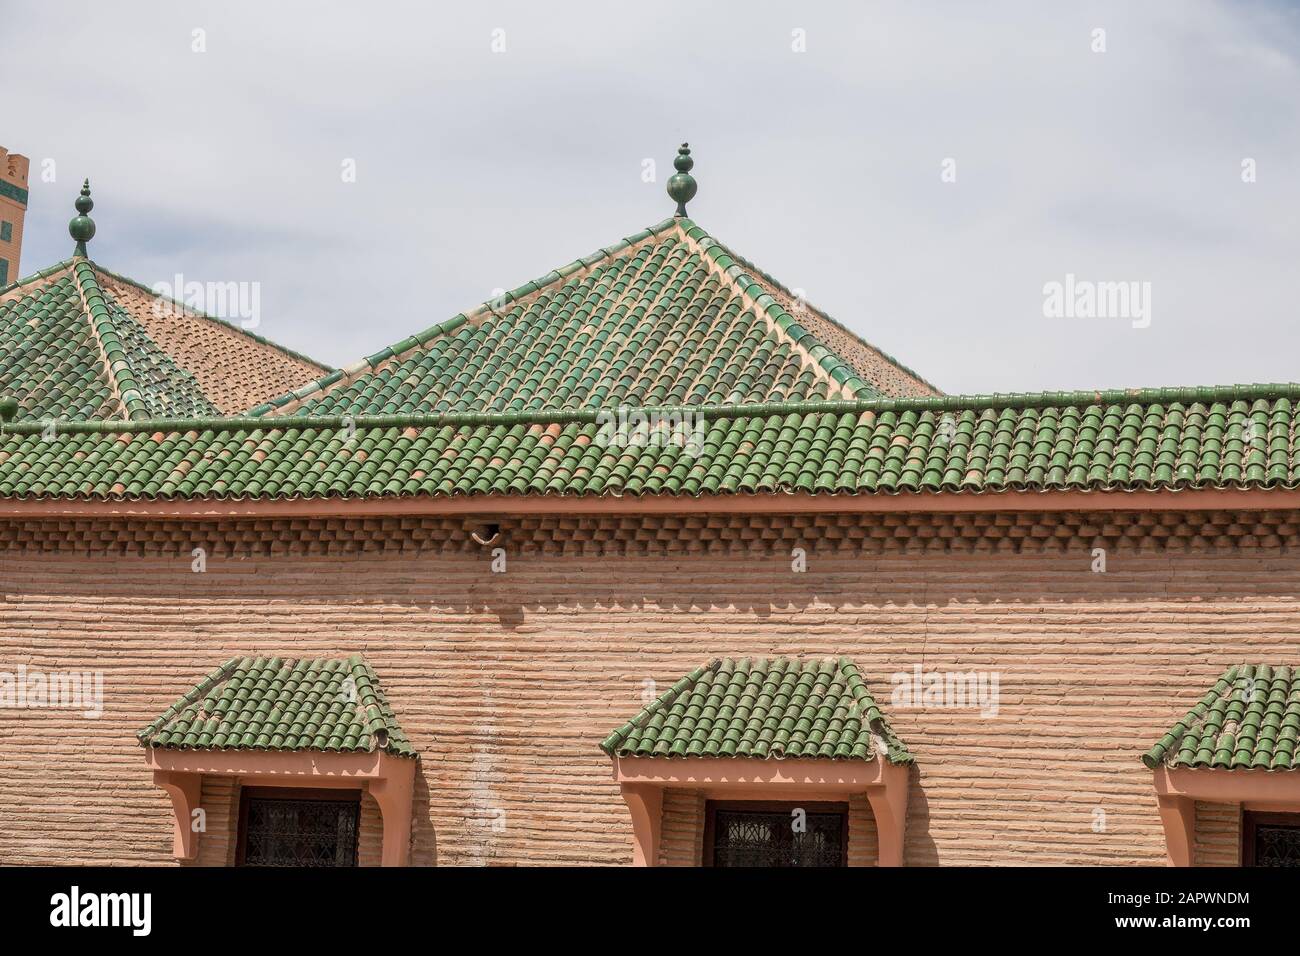 Nahaufnahme des oberen Teils der Son of Joseph Schule in Marrakesch, Marokko Stockfoto